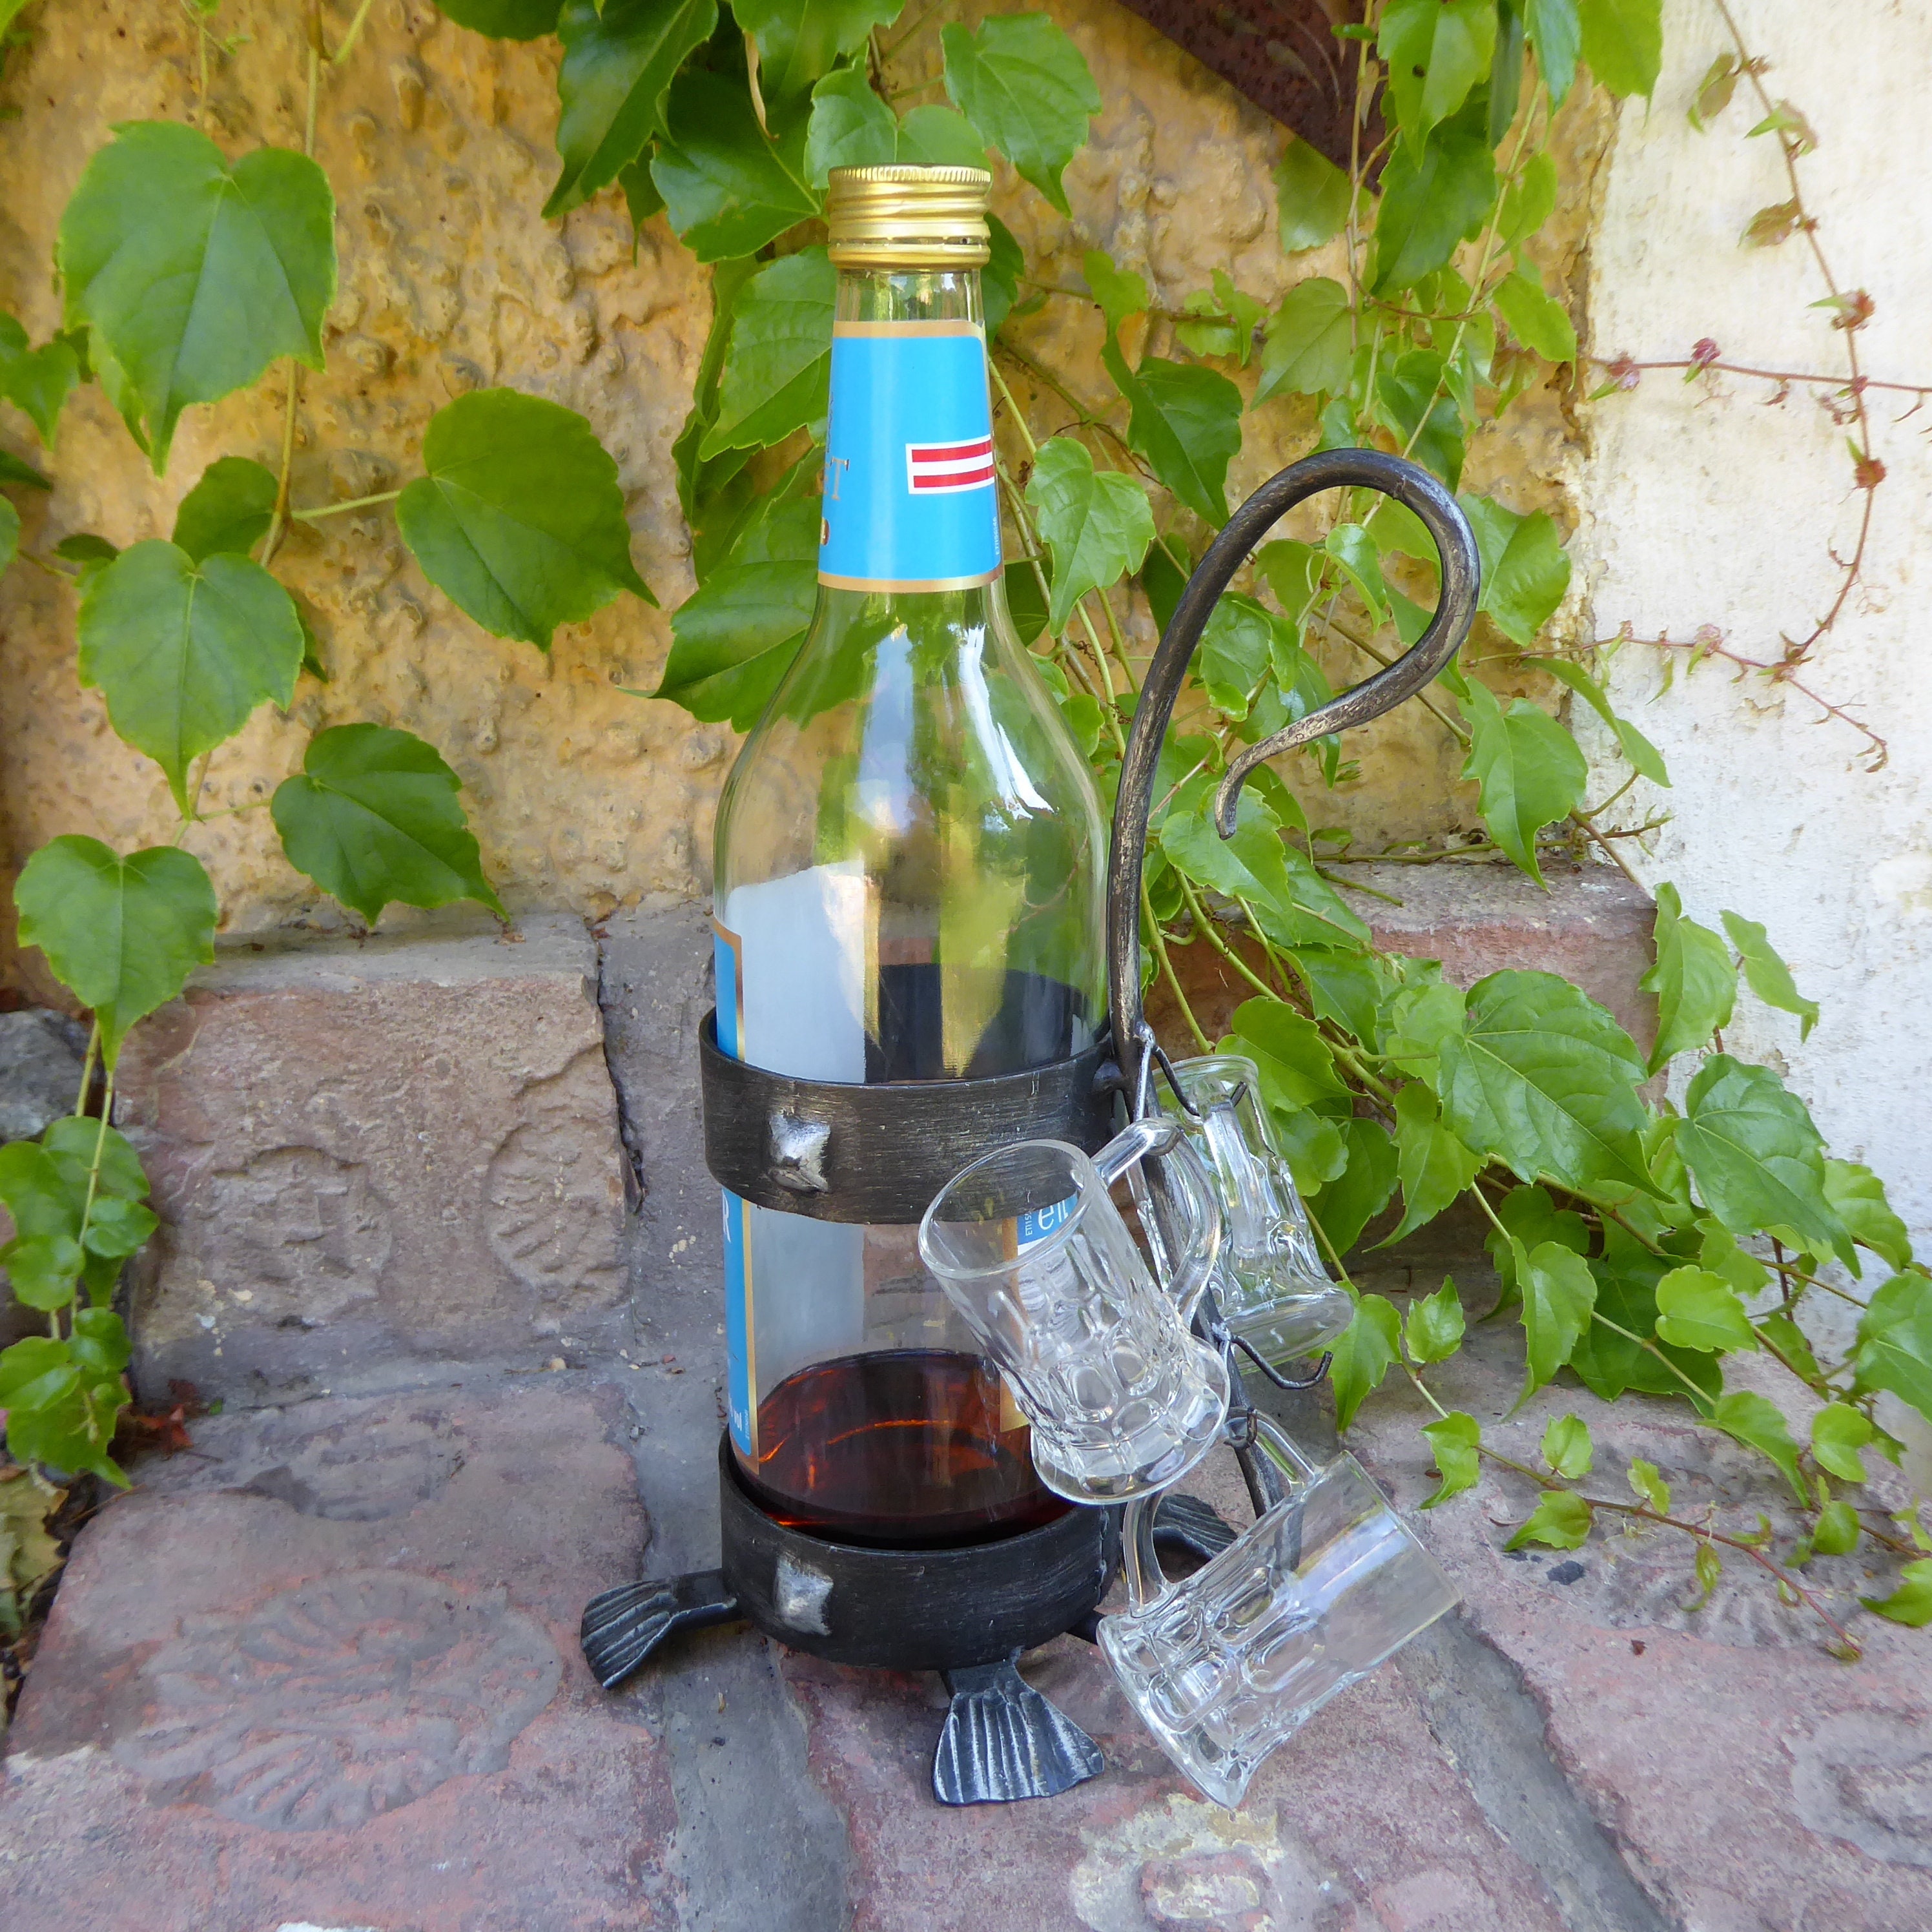 Mini Glasflasche mit Korken verschiedene Formen 6,5x5cm